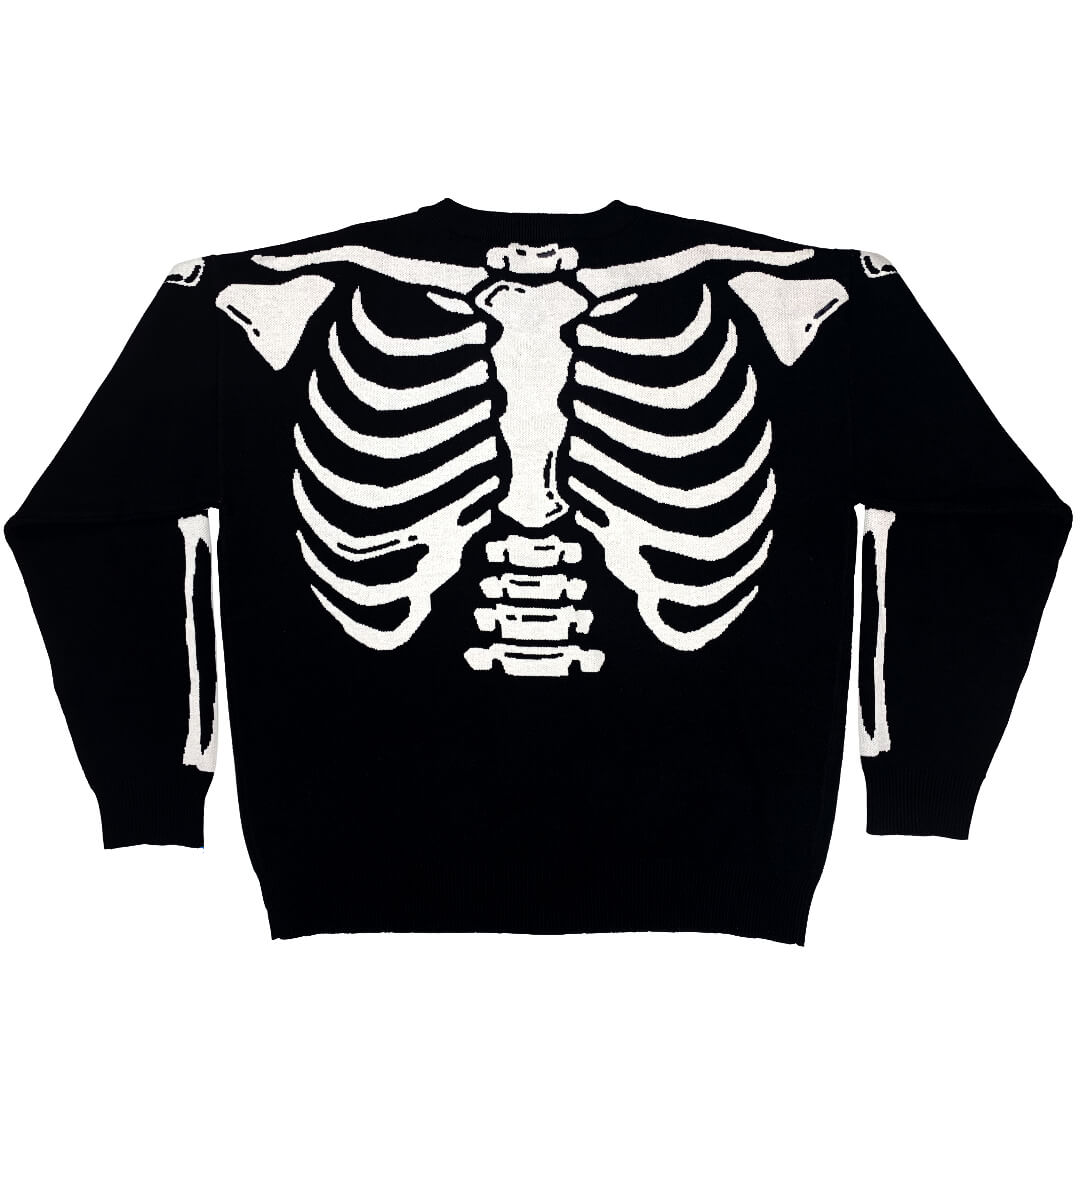 Sweater: Skeleton